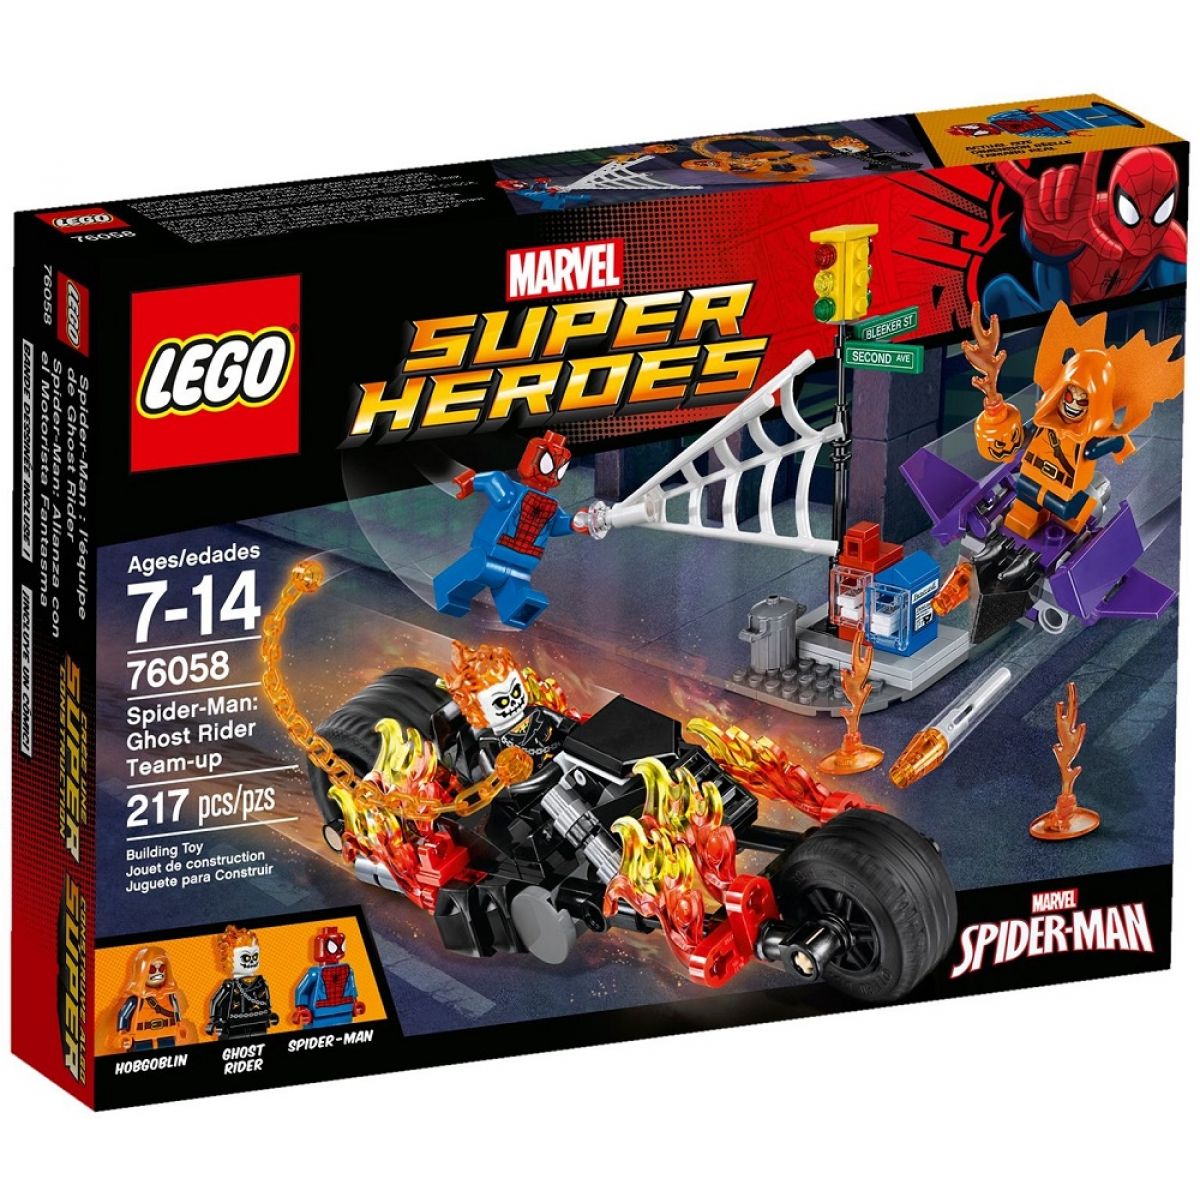 LEGO Super Heroes 76058 Spiderman Ghost Rider vstupuje do týmu